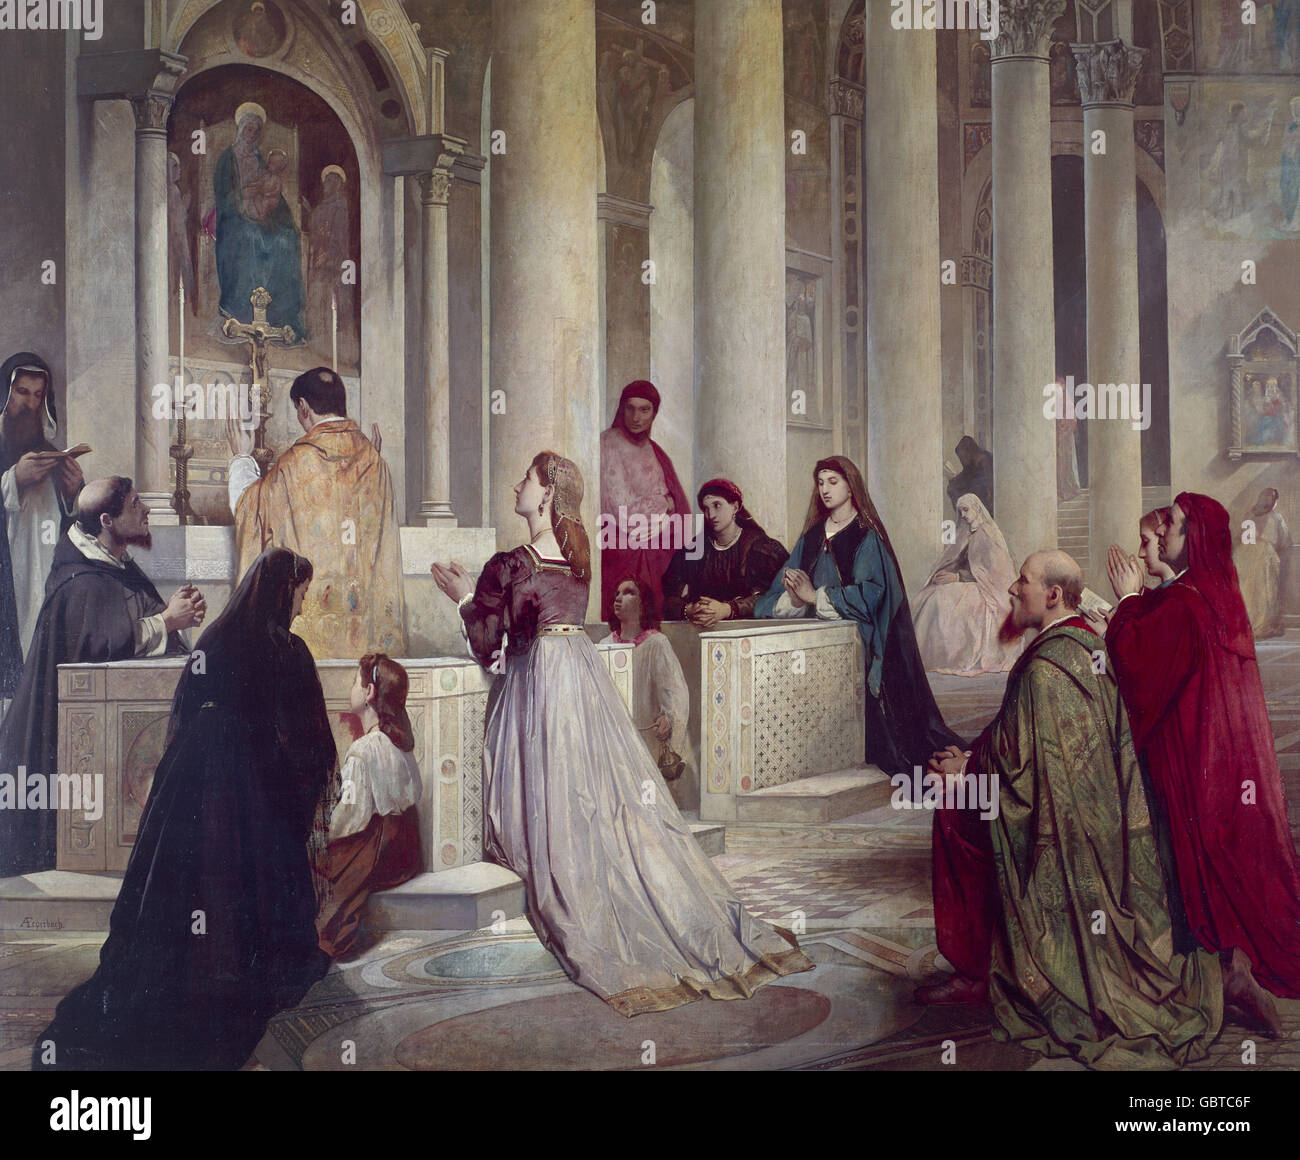 Bildende Kunst, Feuerbach, Anselm (12.9.1829 - 4.1.1880), Malerei "Laura in der Kirche" (Laura in der Kirche), 1864/1865, Schack-Galerie, München, Deutschland, Stockfoto